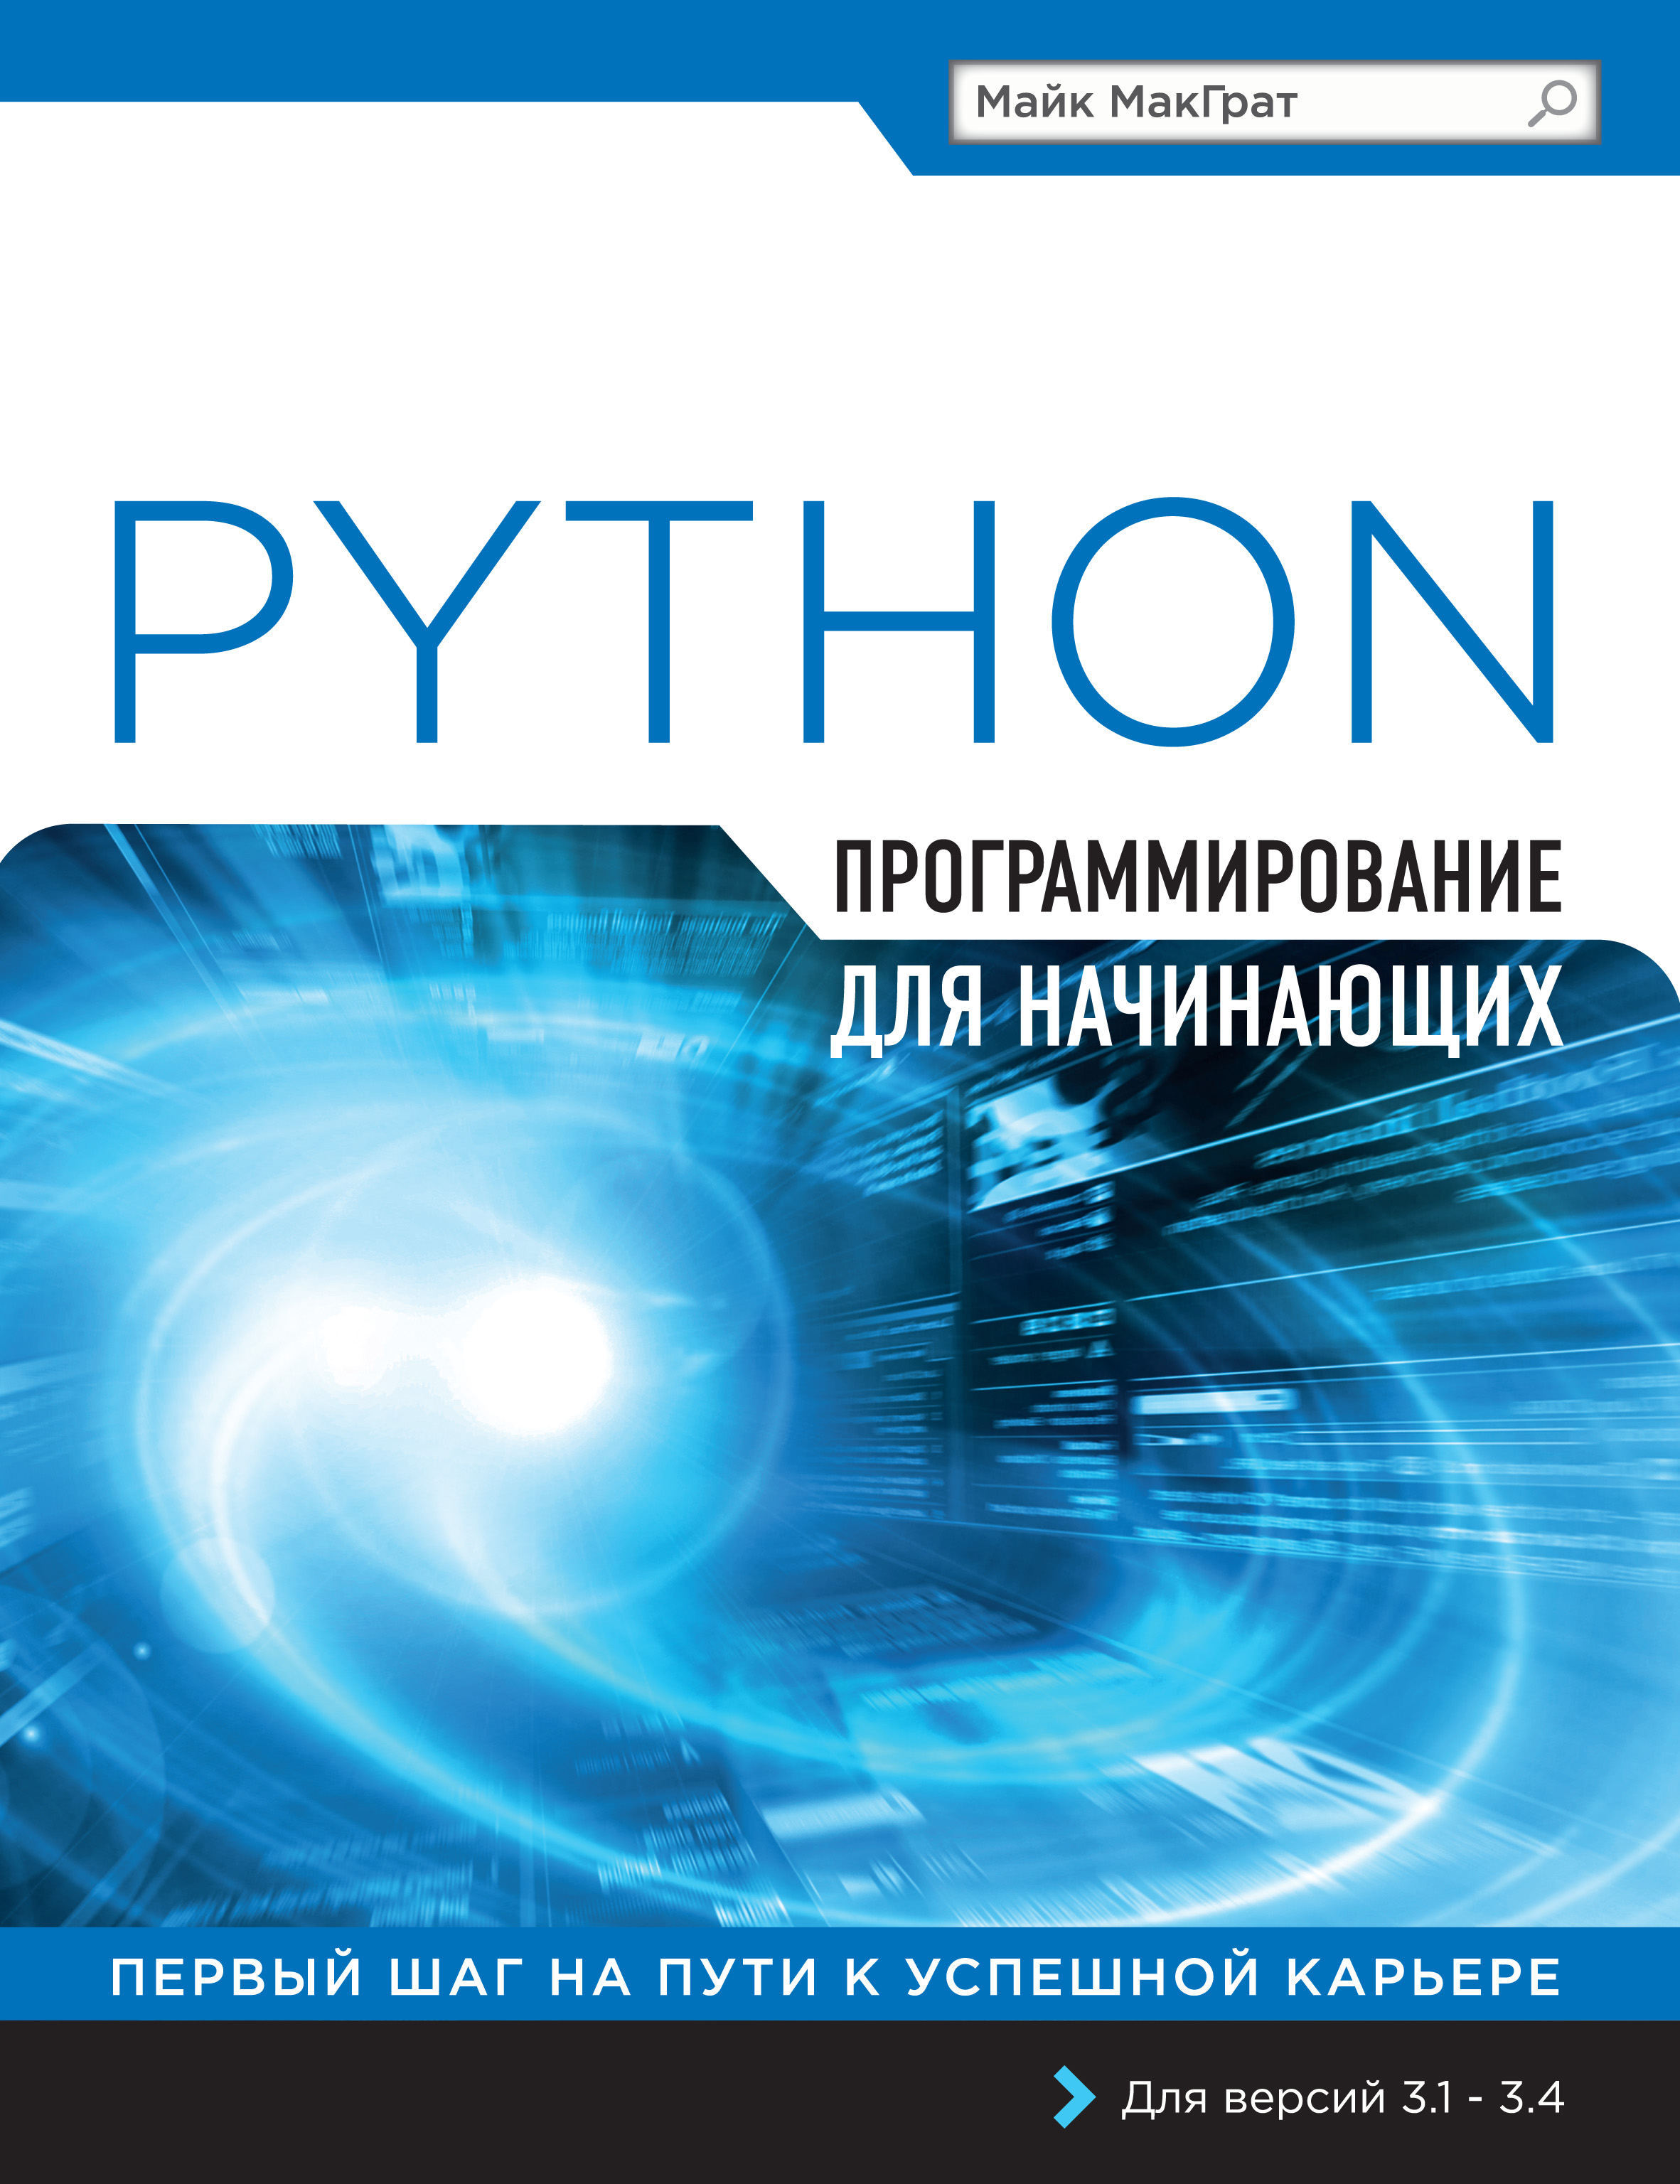 Книга Программирование для начинающих Python. Программирование для начинающих созданная Михаил Райтман, Майк МакГрат может относится к жанру зарубежная компьютерная литература, программирование. Стоимость электронной книги Python. Программирование для начинающих с идентификатором 14108932 составляет 479.00 руб.